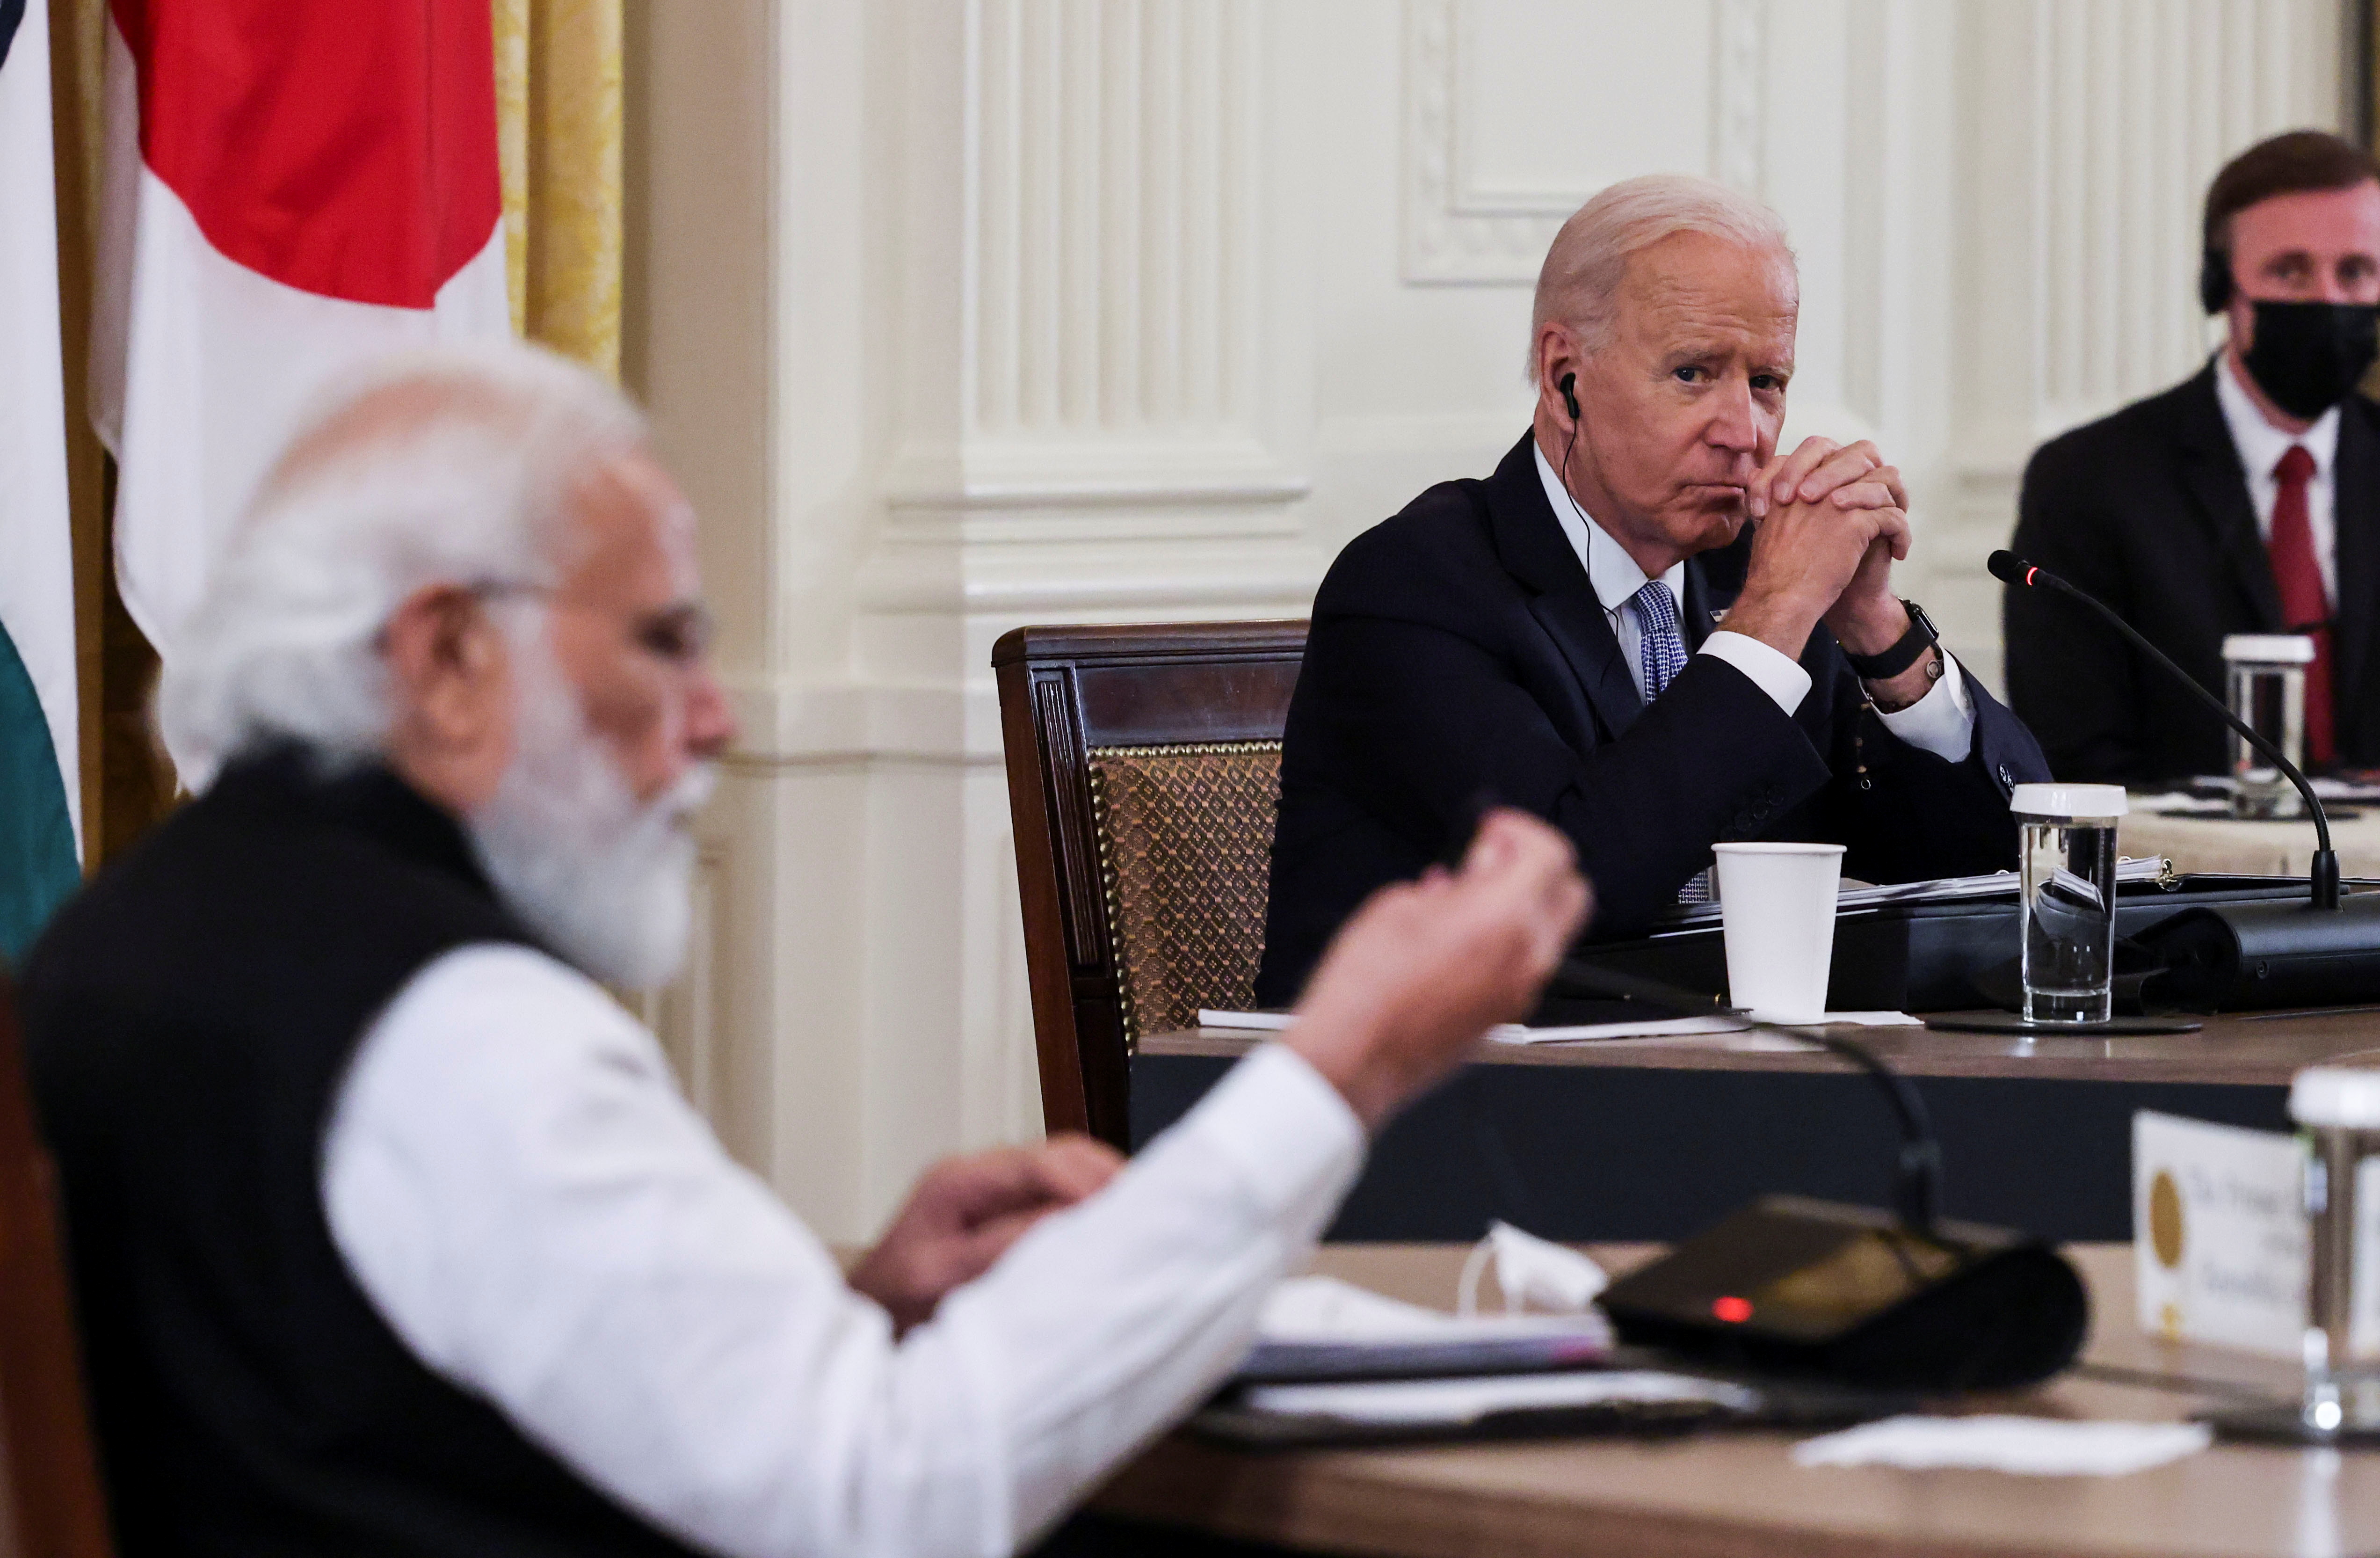 Joe Biden escuchando al premier indio Narendra Modi durante una reunión de la alianza Quad en la Casa Blanda (Foto: REUTERS/Evelyn Hockstein)